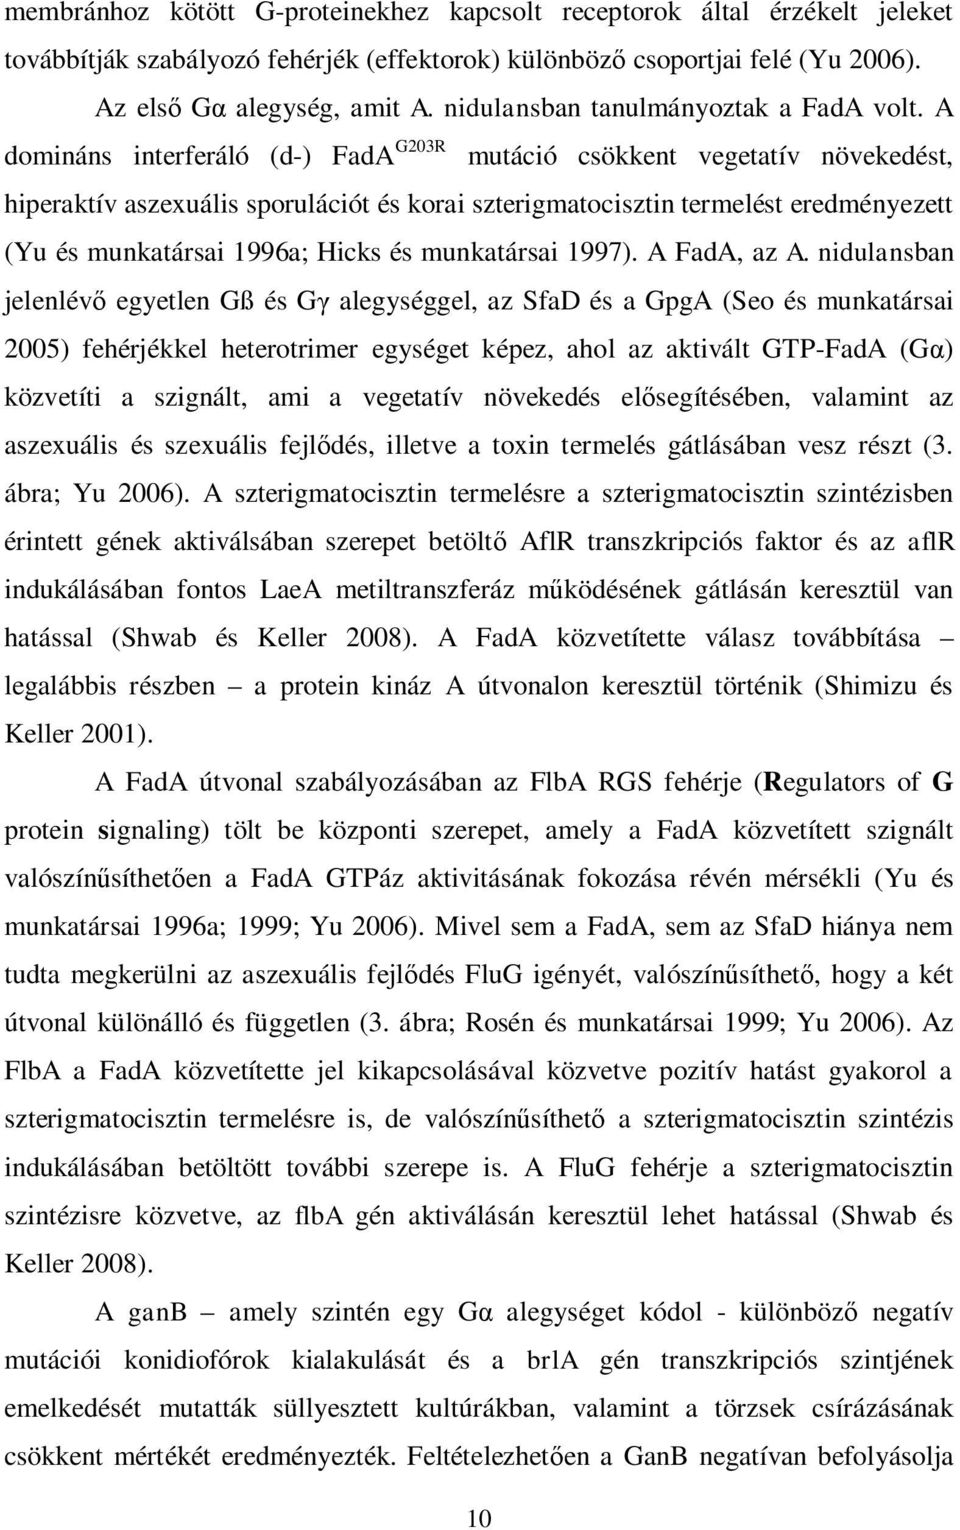 A domináns interferáló (d-) FadA G203R mutáció csökkent vegetatív növekedést, hiperaktív aszexuális sporulációt és korai szterigmatocisztin termelést eredményezett (Yu és munkatársai 1996a; Hicks és